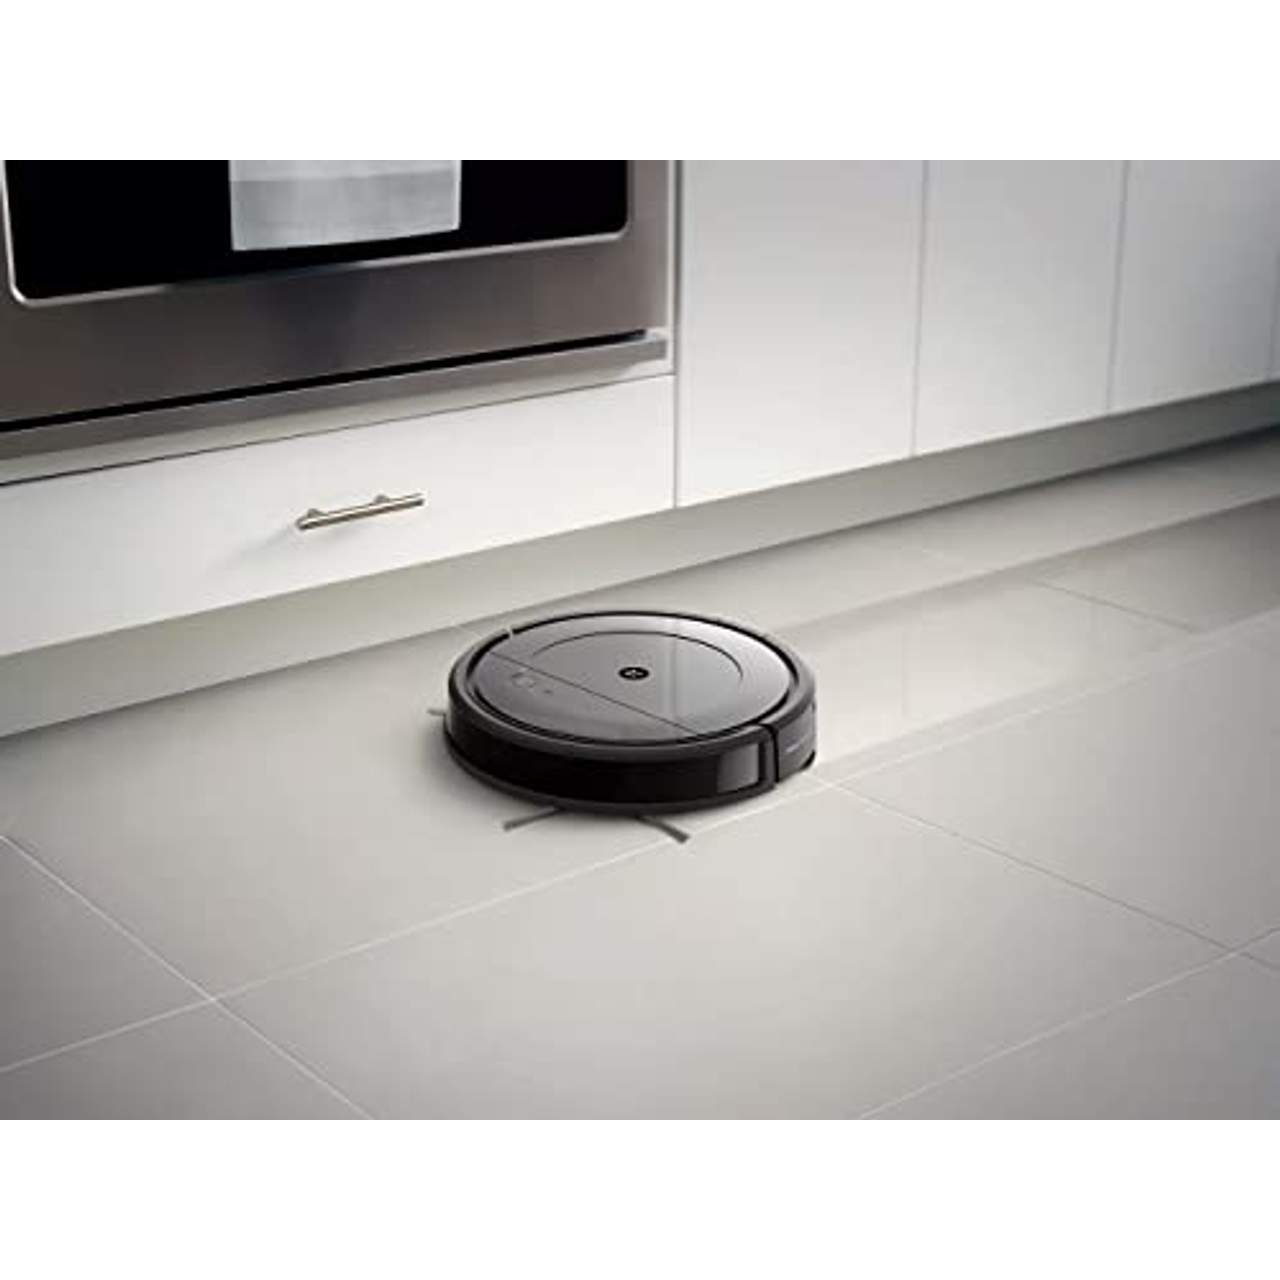 iRobot Roomba Combo-Saug-Wischroboter Über WLAN verbundener Saugroboter